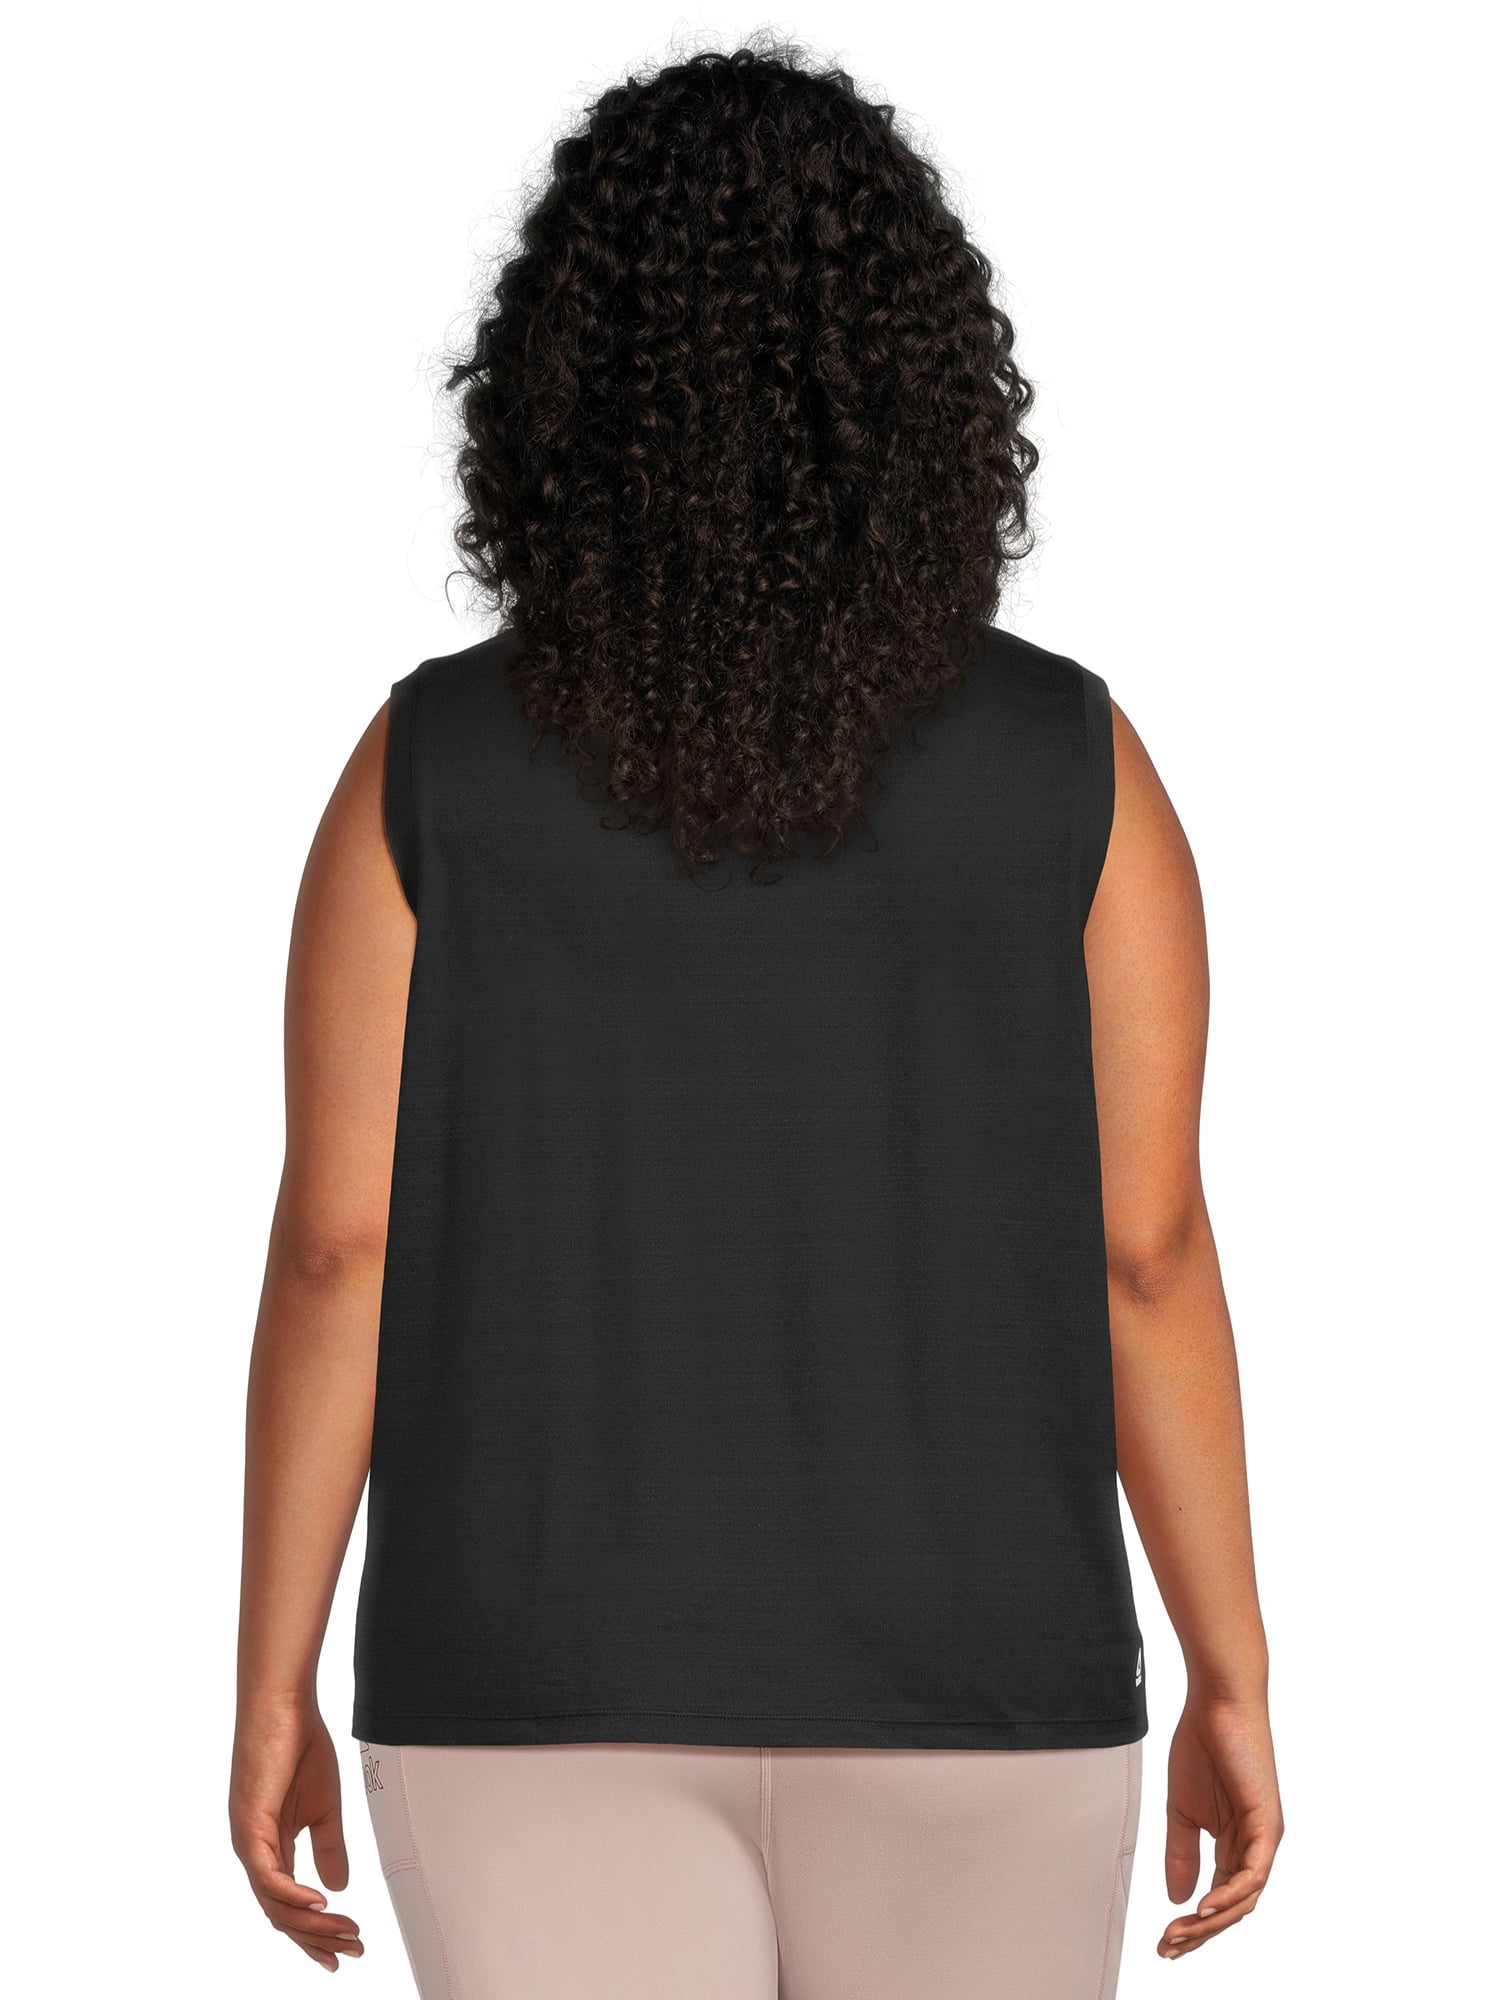 Reebok Apparel Women Maternity Drawstring Tank Top (Plus Size) BLACK